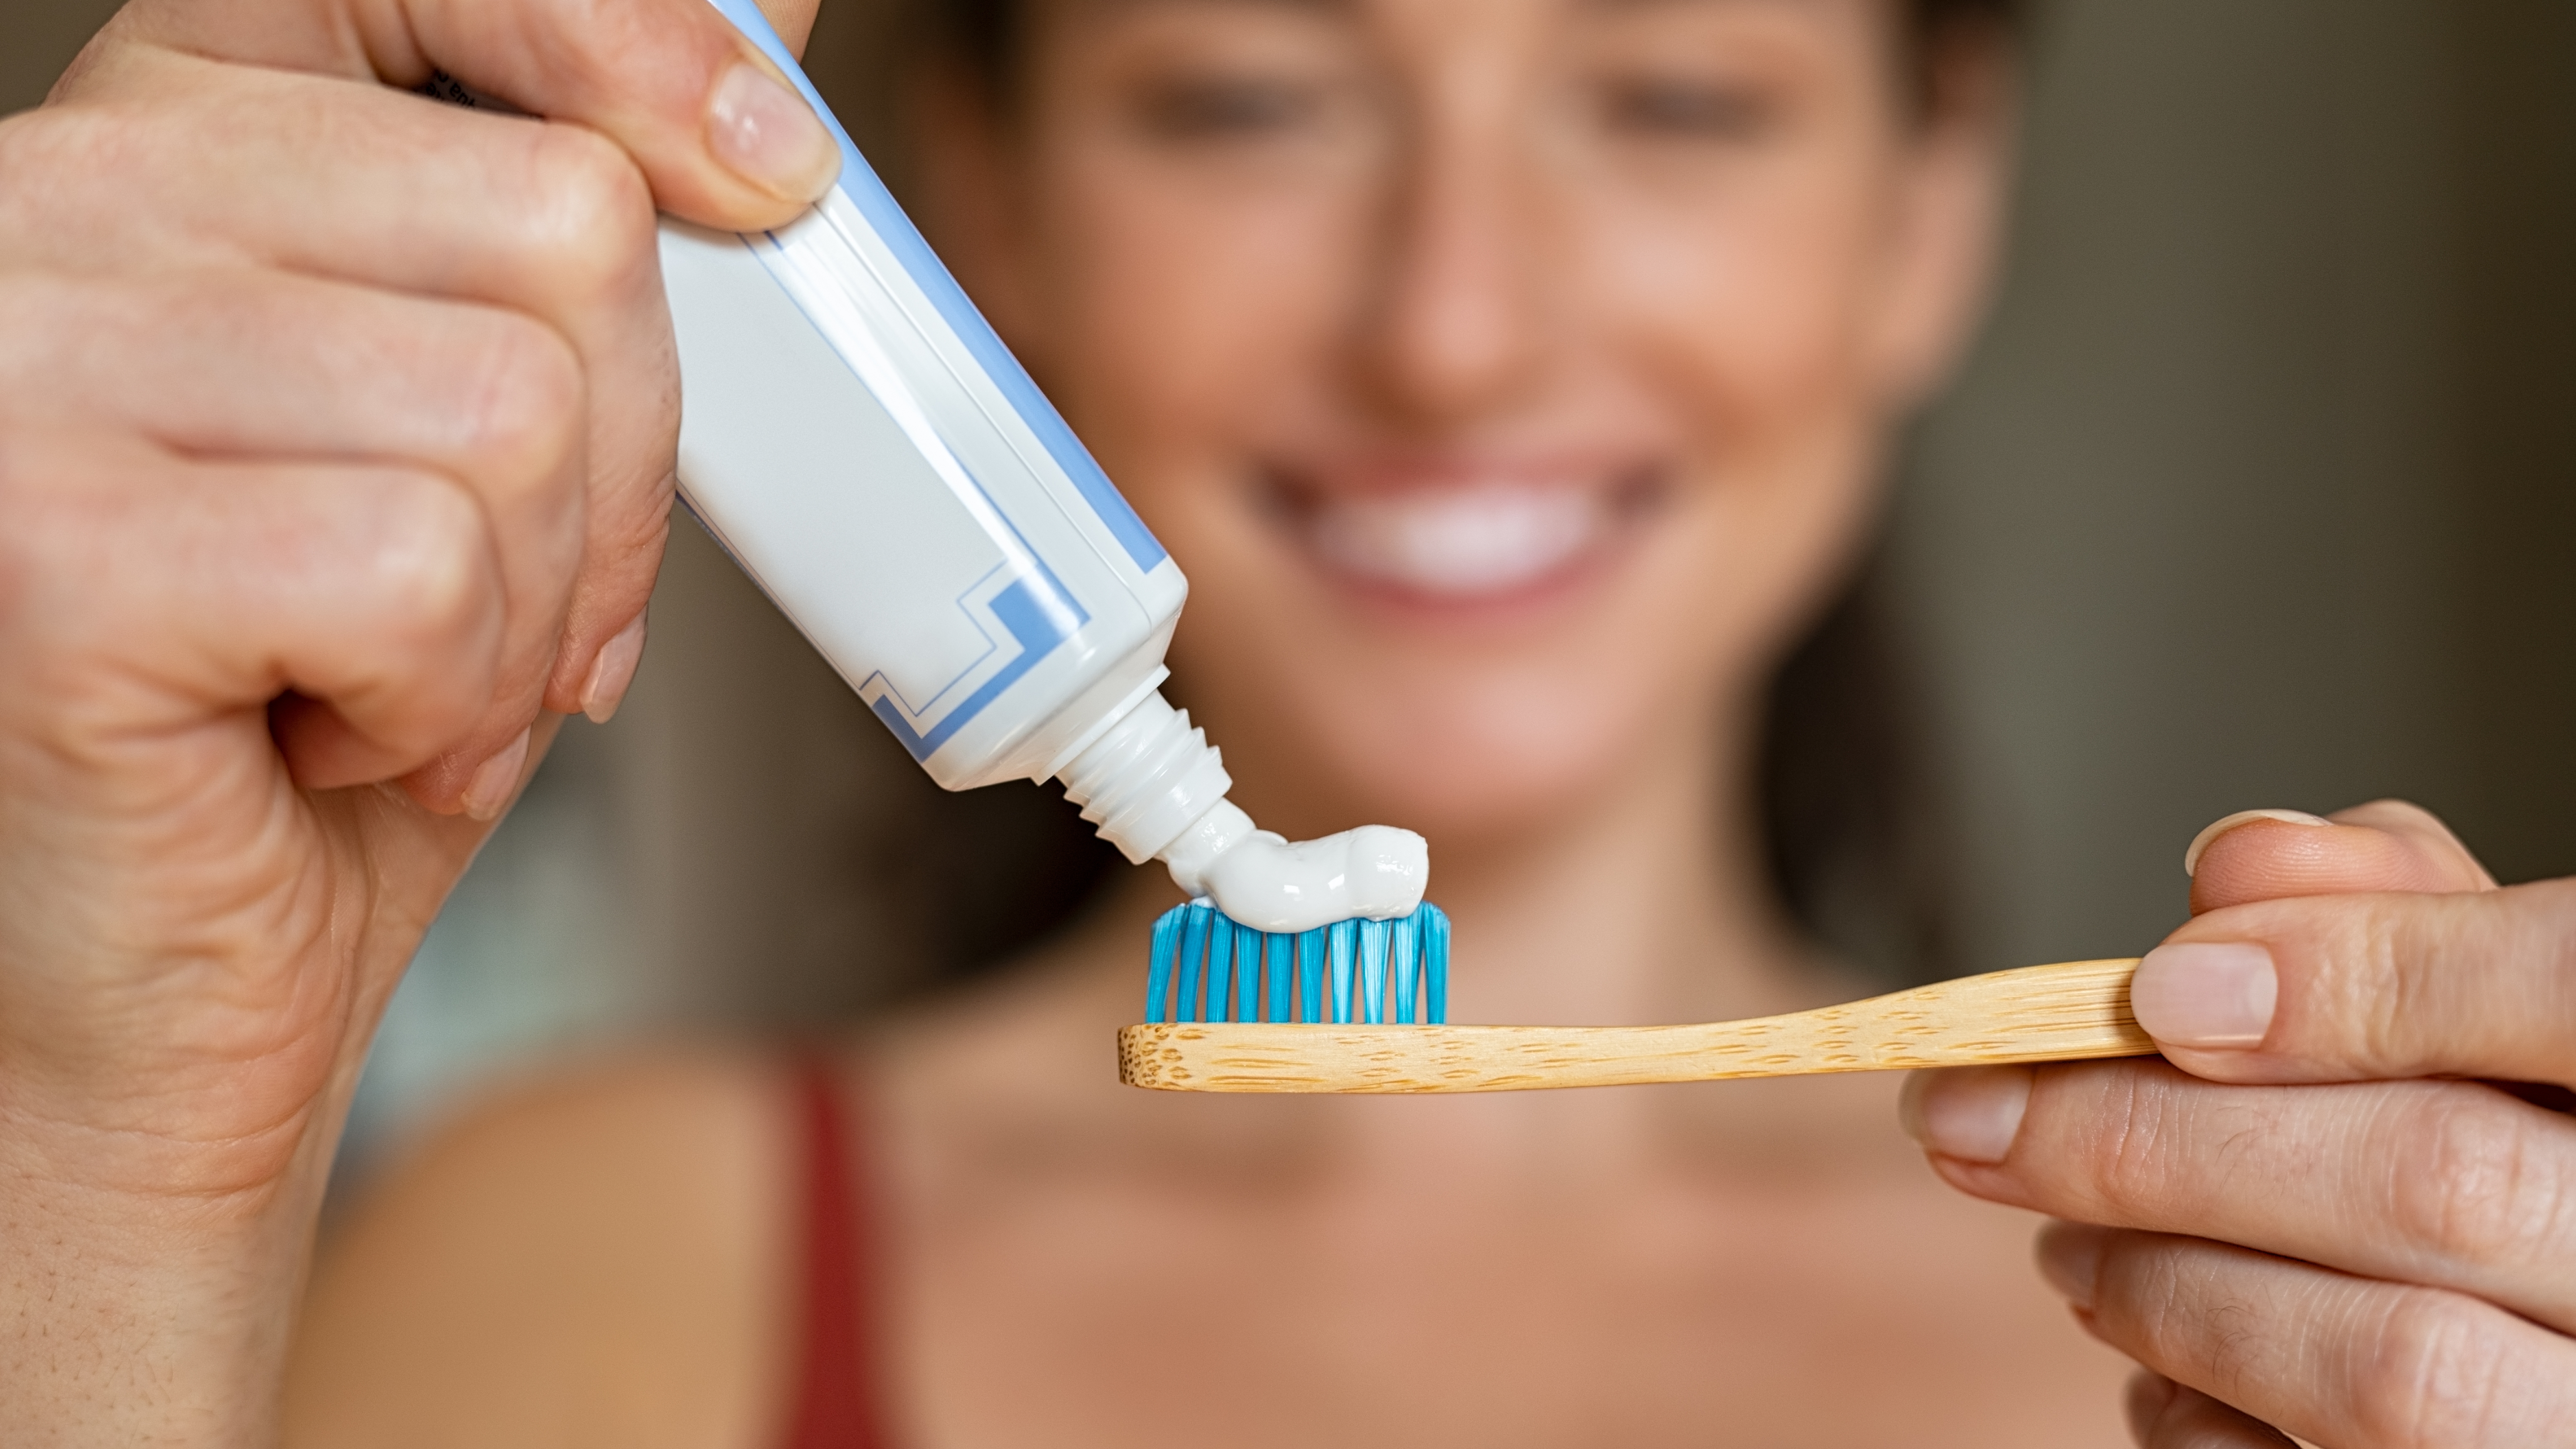 Los niños ponen mucha pasta de dientes en el cepillo y puede ser